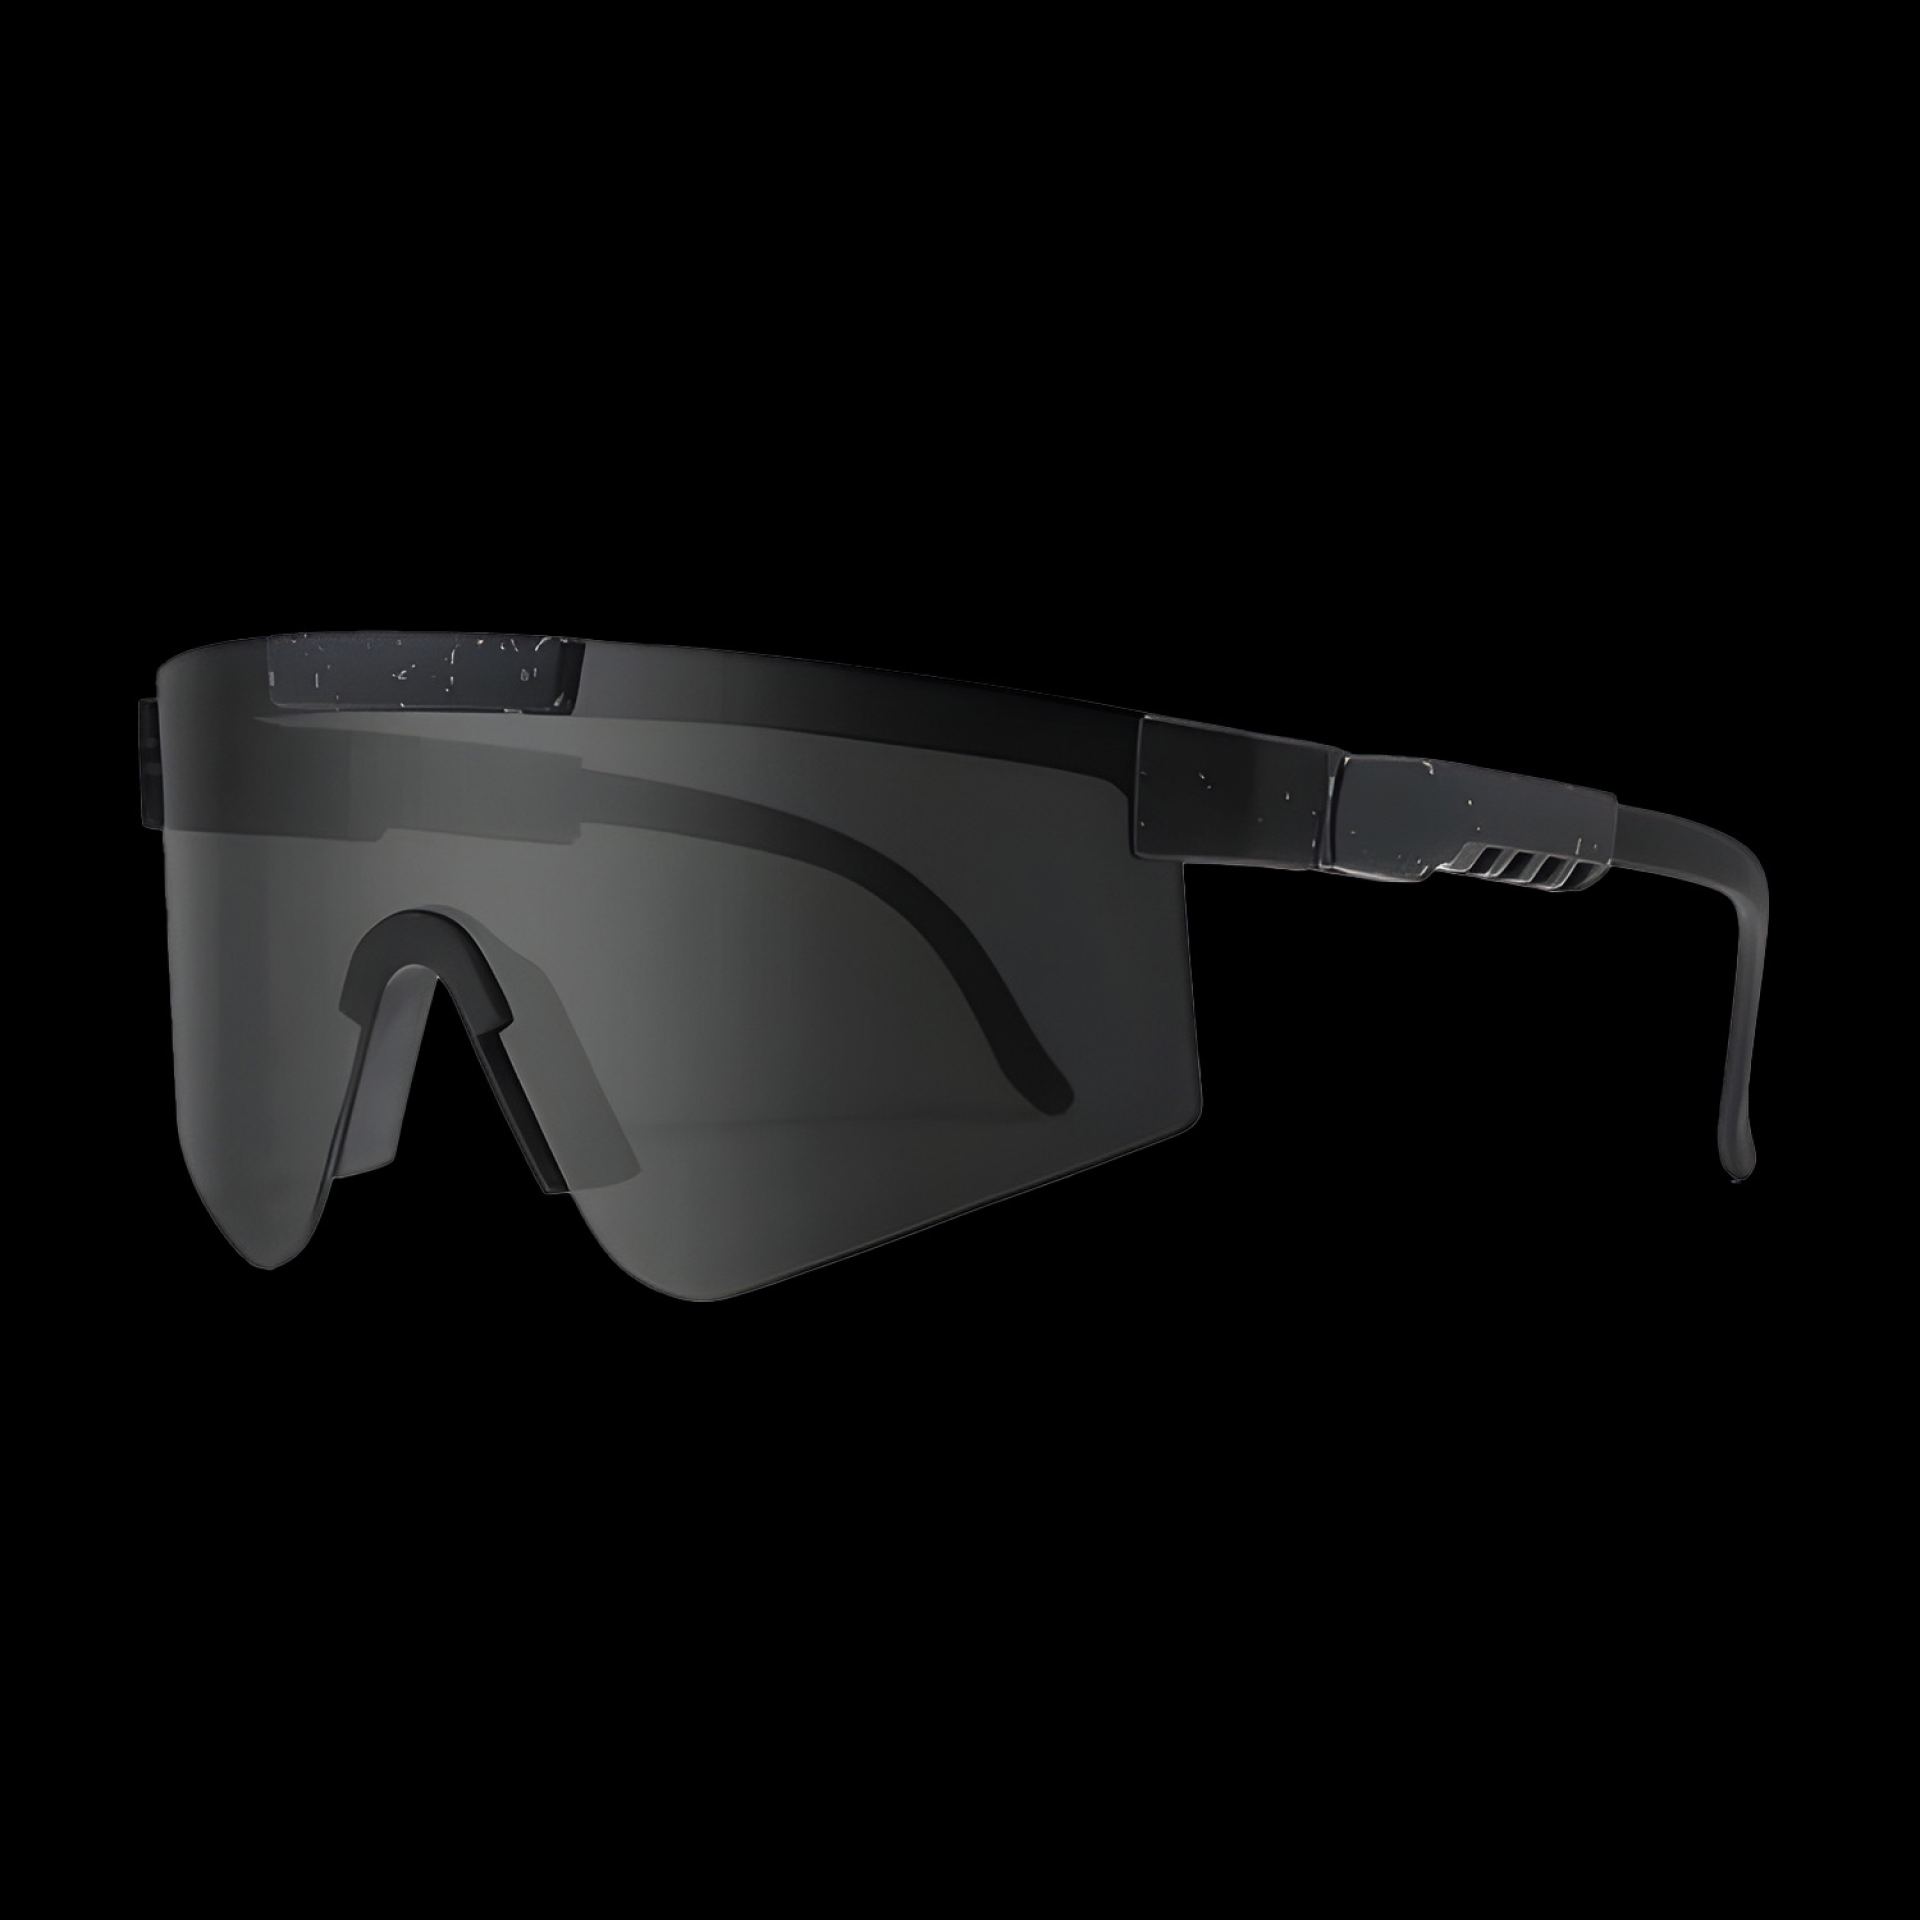 Rave bril sport zonnebril zwart/zilver